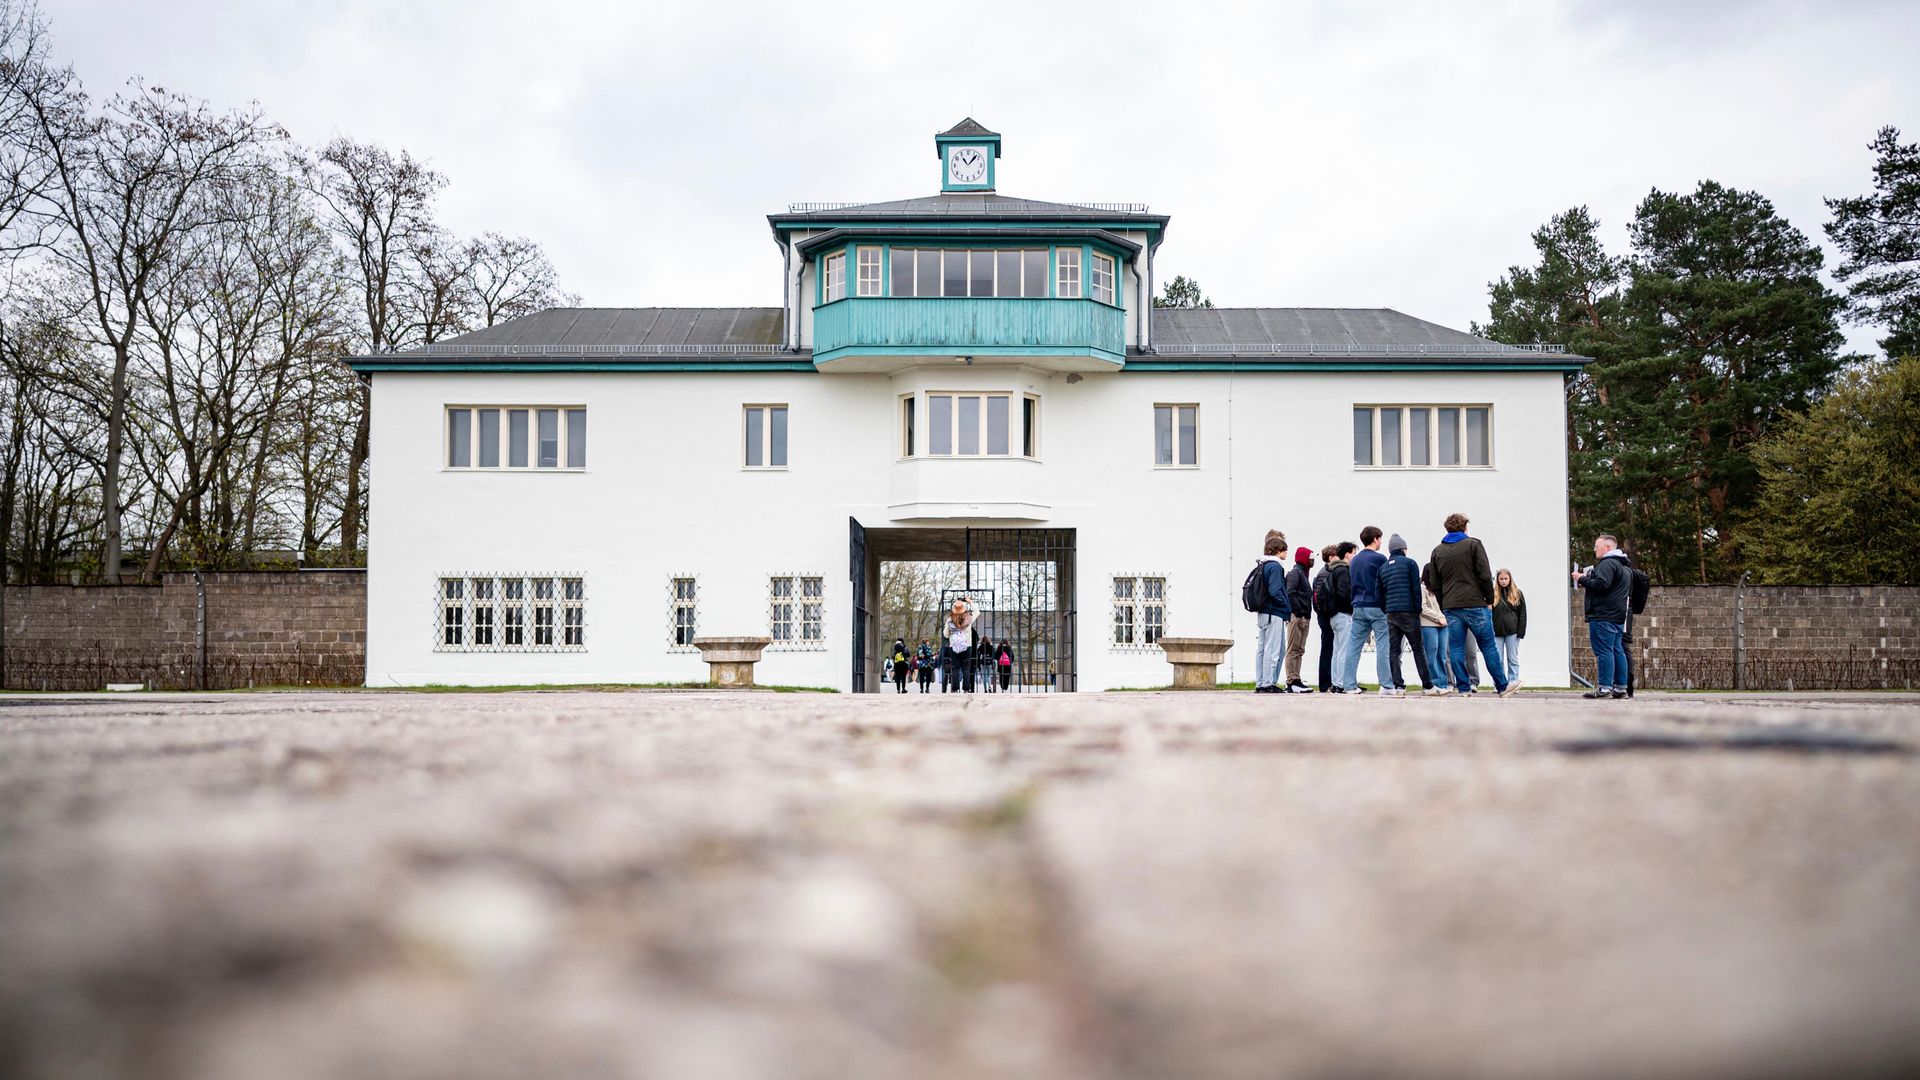 kz-gedenkstätte sachsenhausen: gästebücher voll mit hassbotschaften